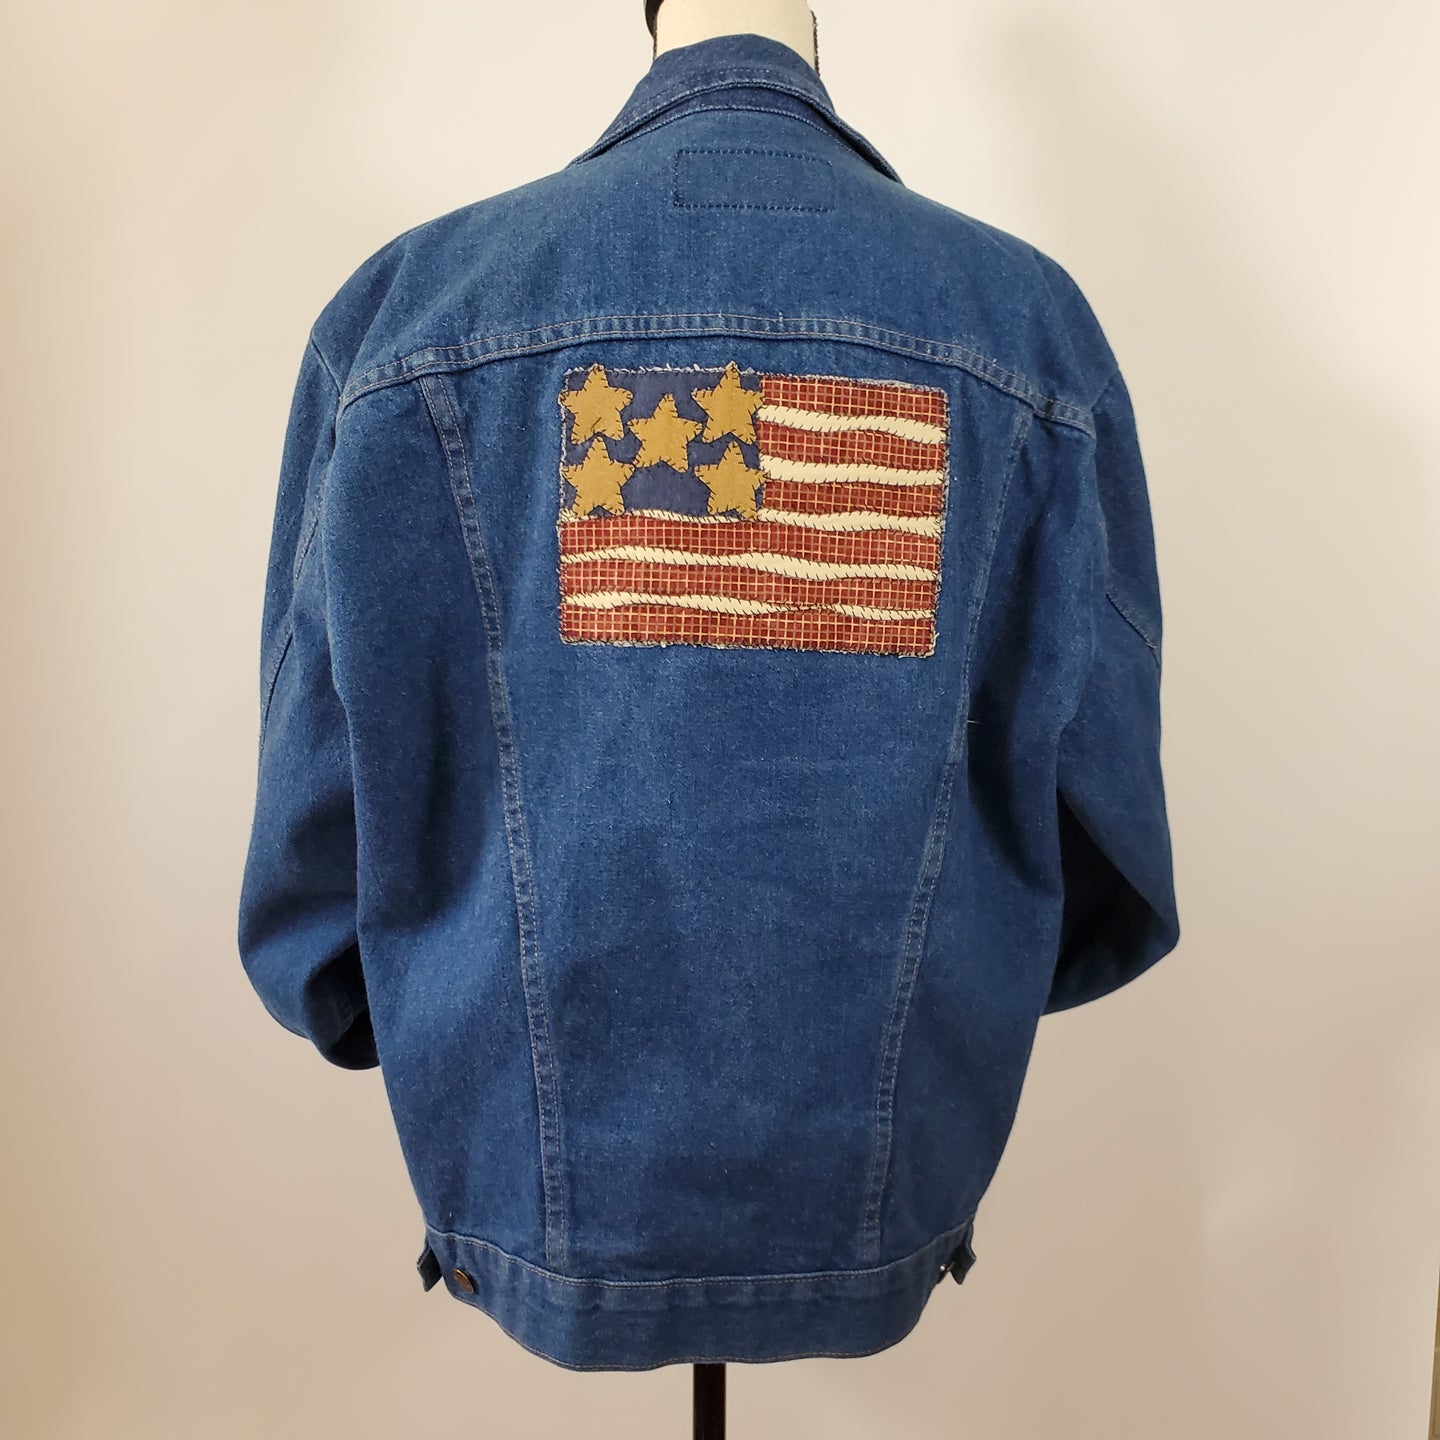 Vintage Wrangler Denim Trucker Jacket 100% Cotton Size Large